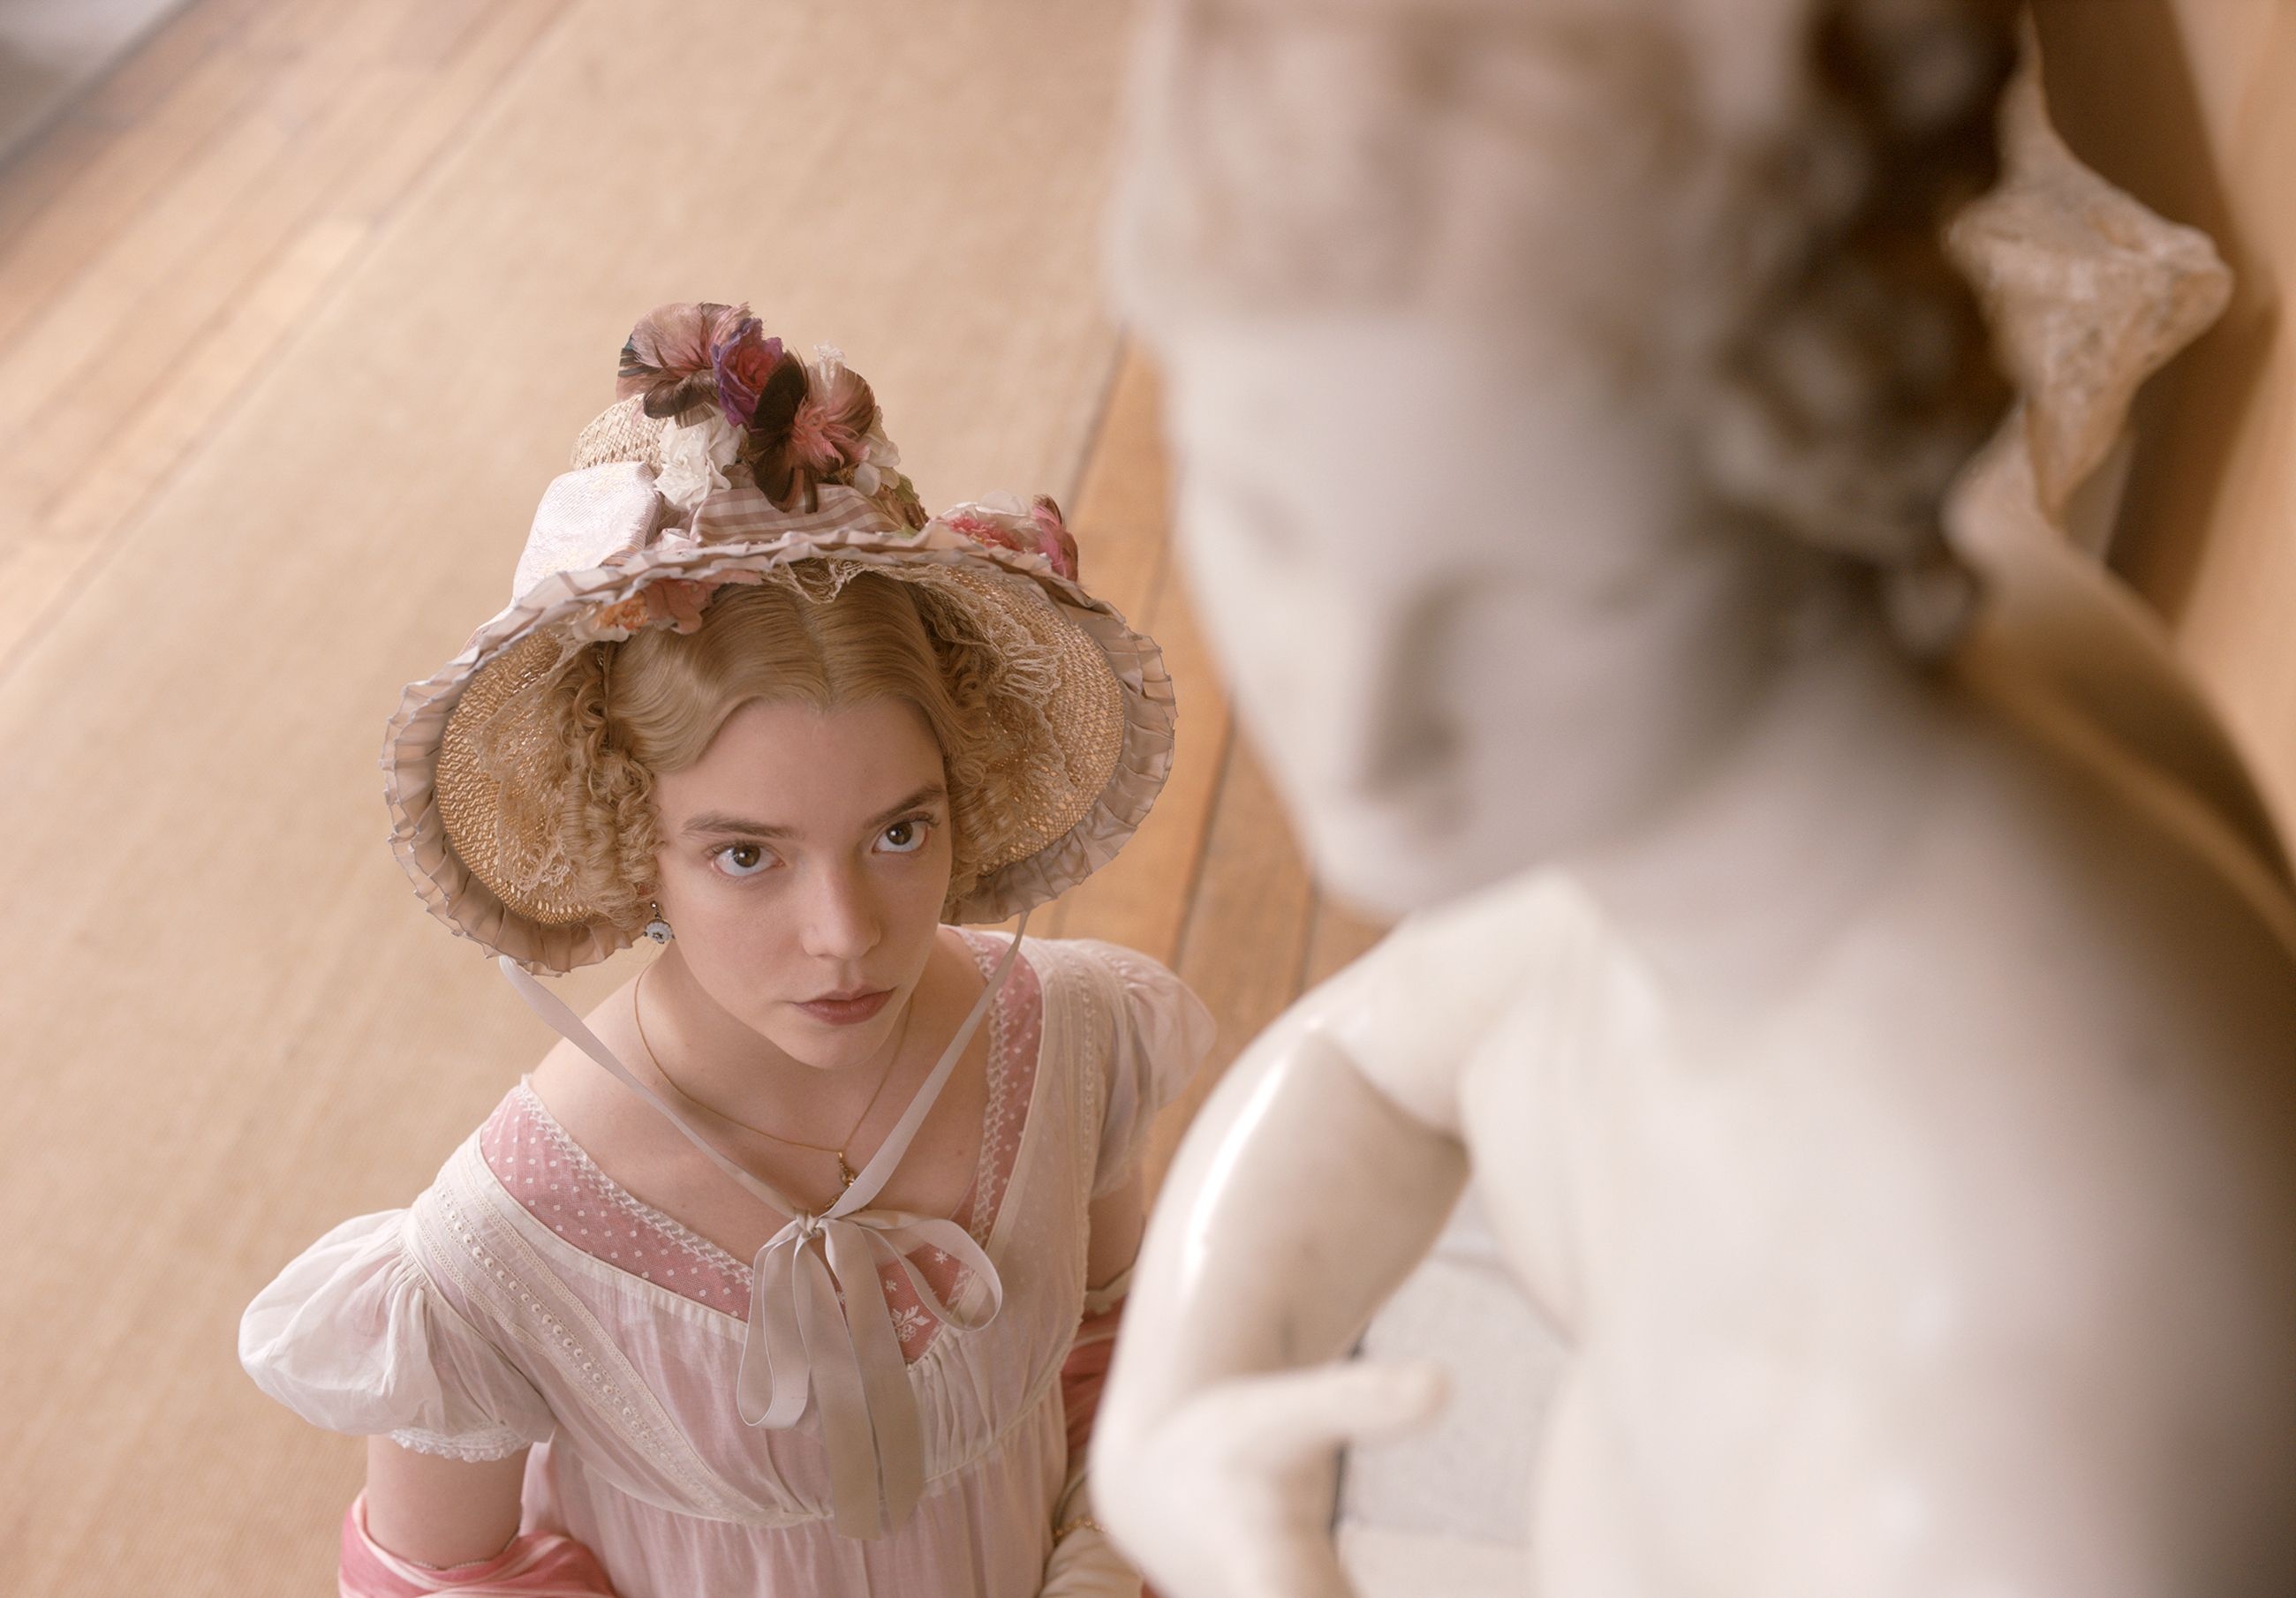 Emma movie, Director interview, Love story analysis, Jane Austen, 2600x1810 HD Desktop